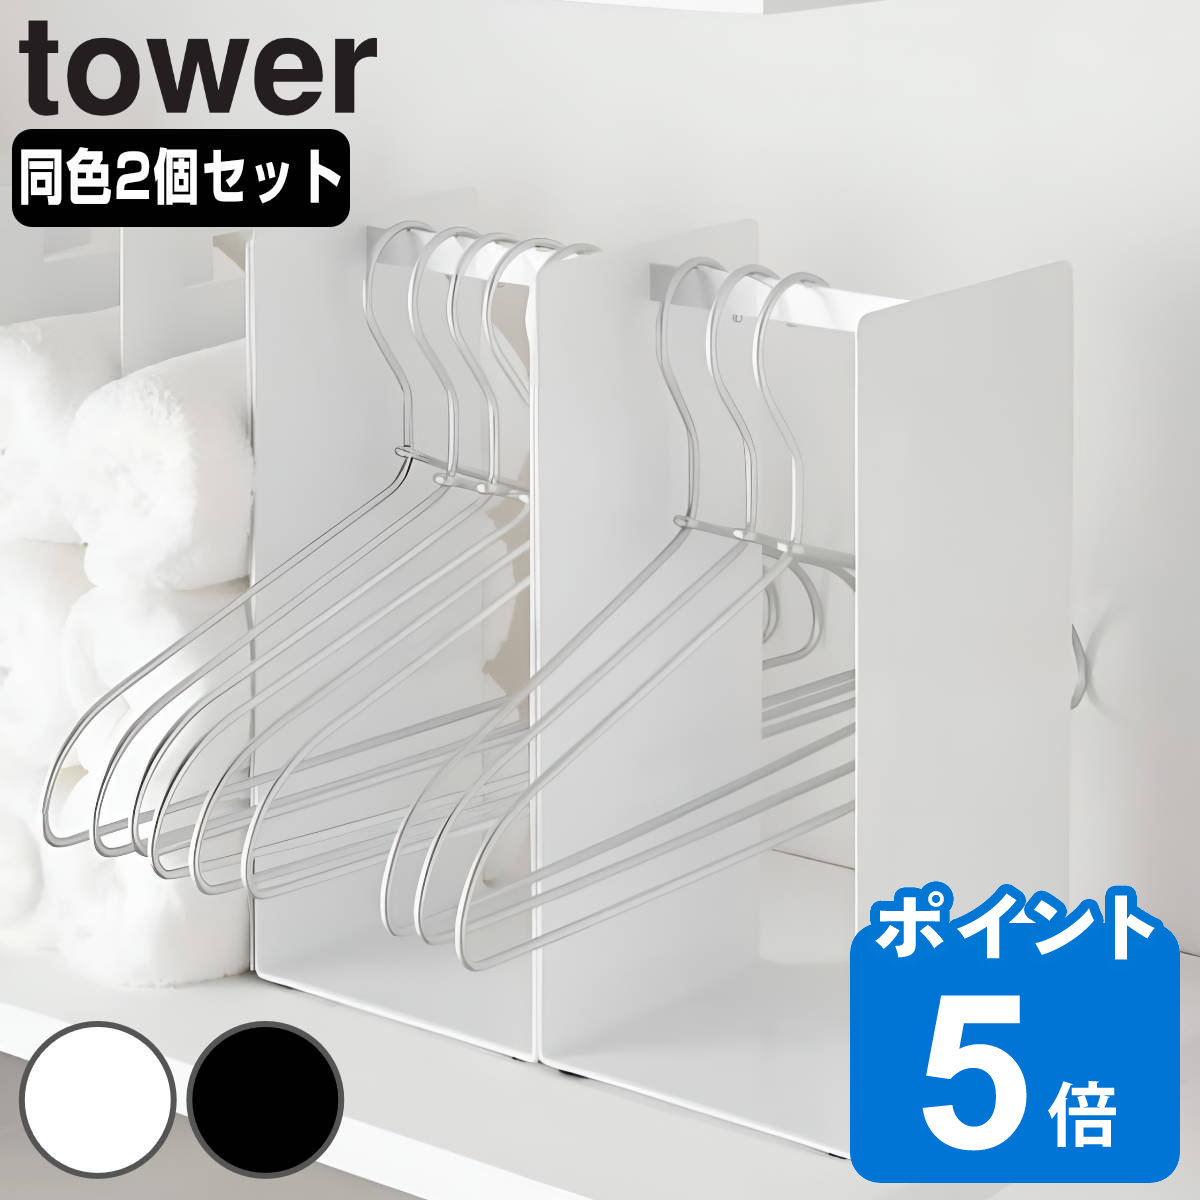 山崎実業 tower ハンガー収納ラック タワー 2個セット